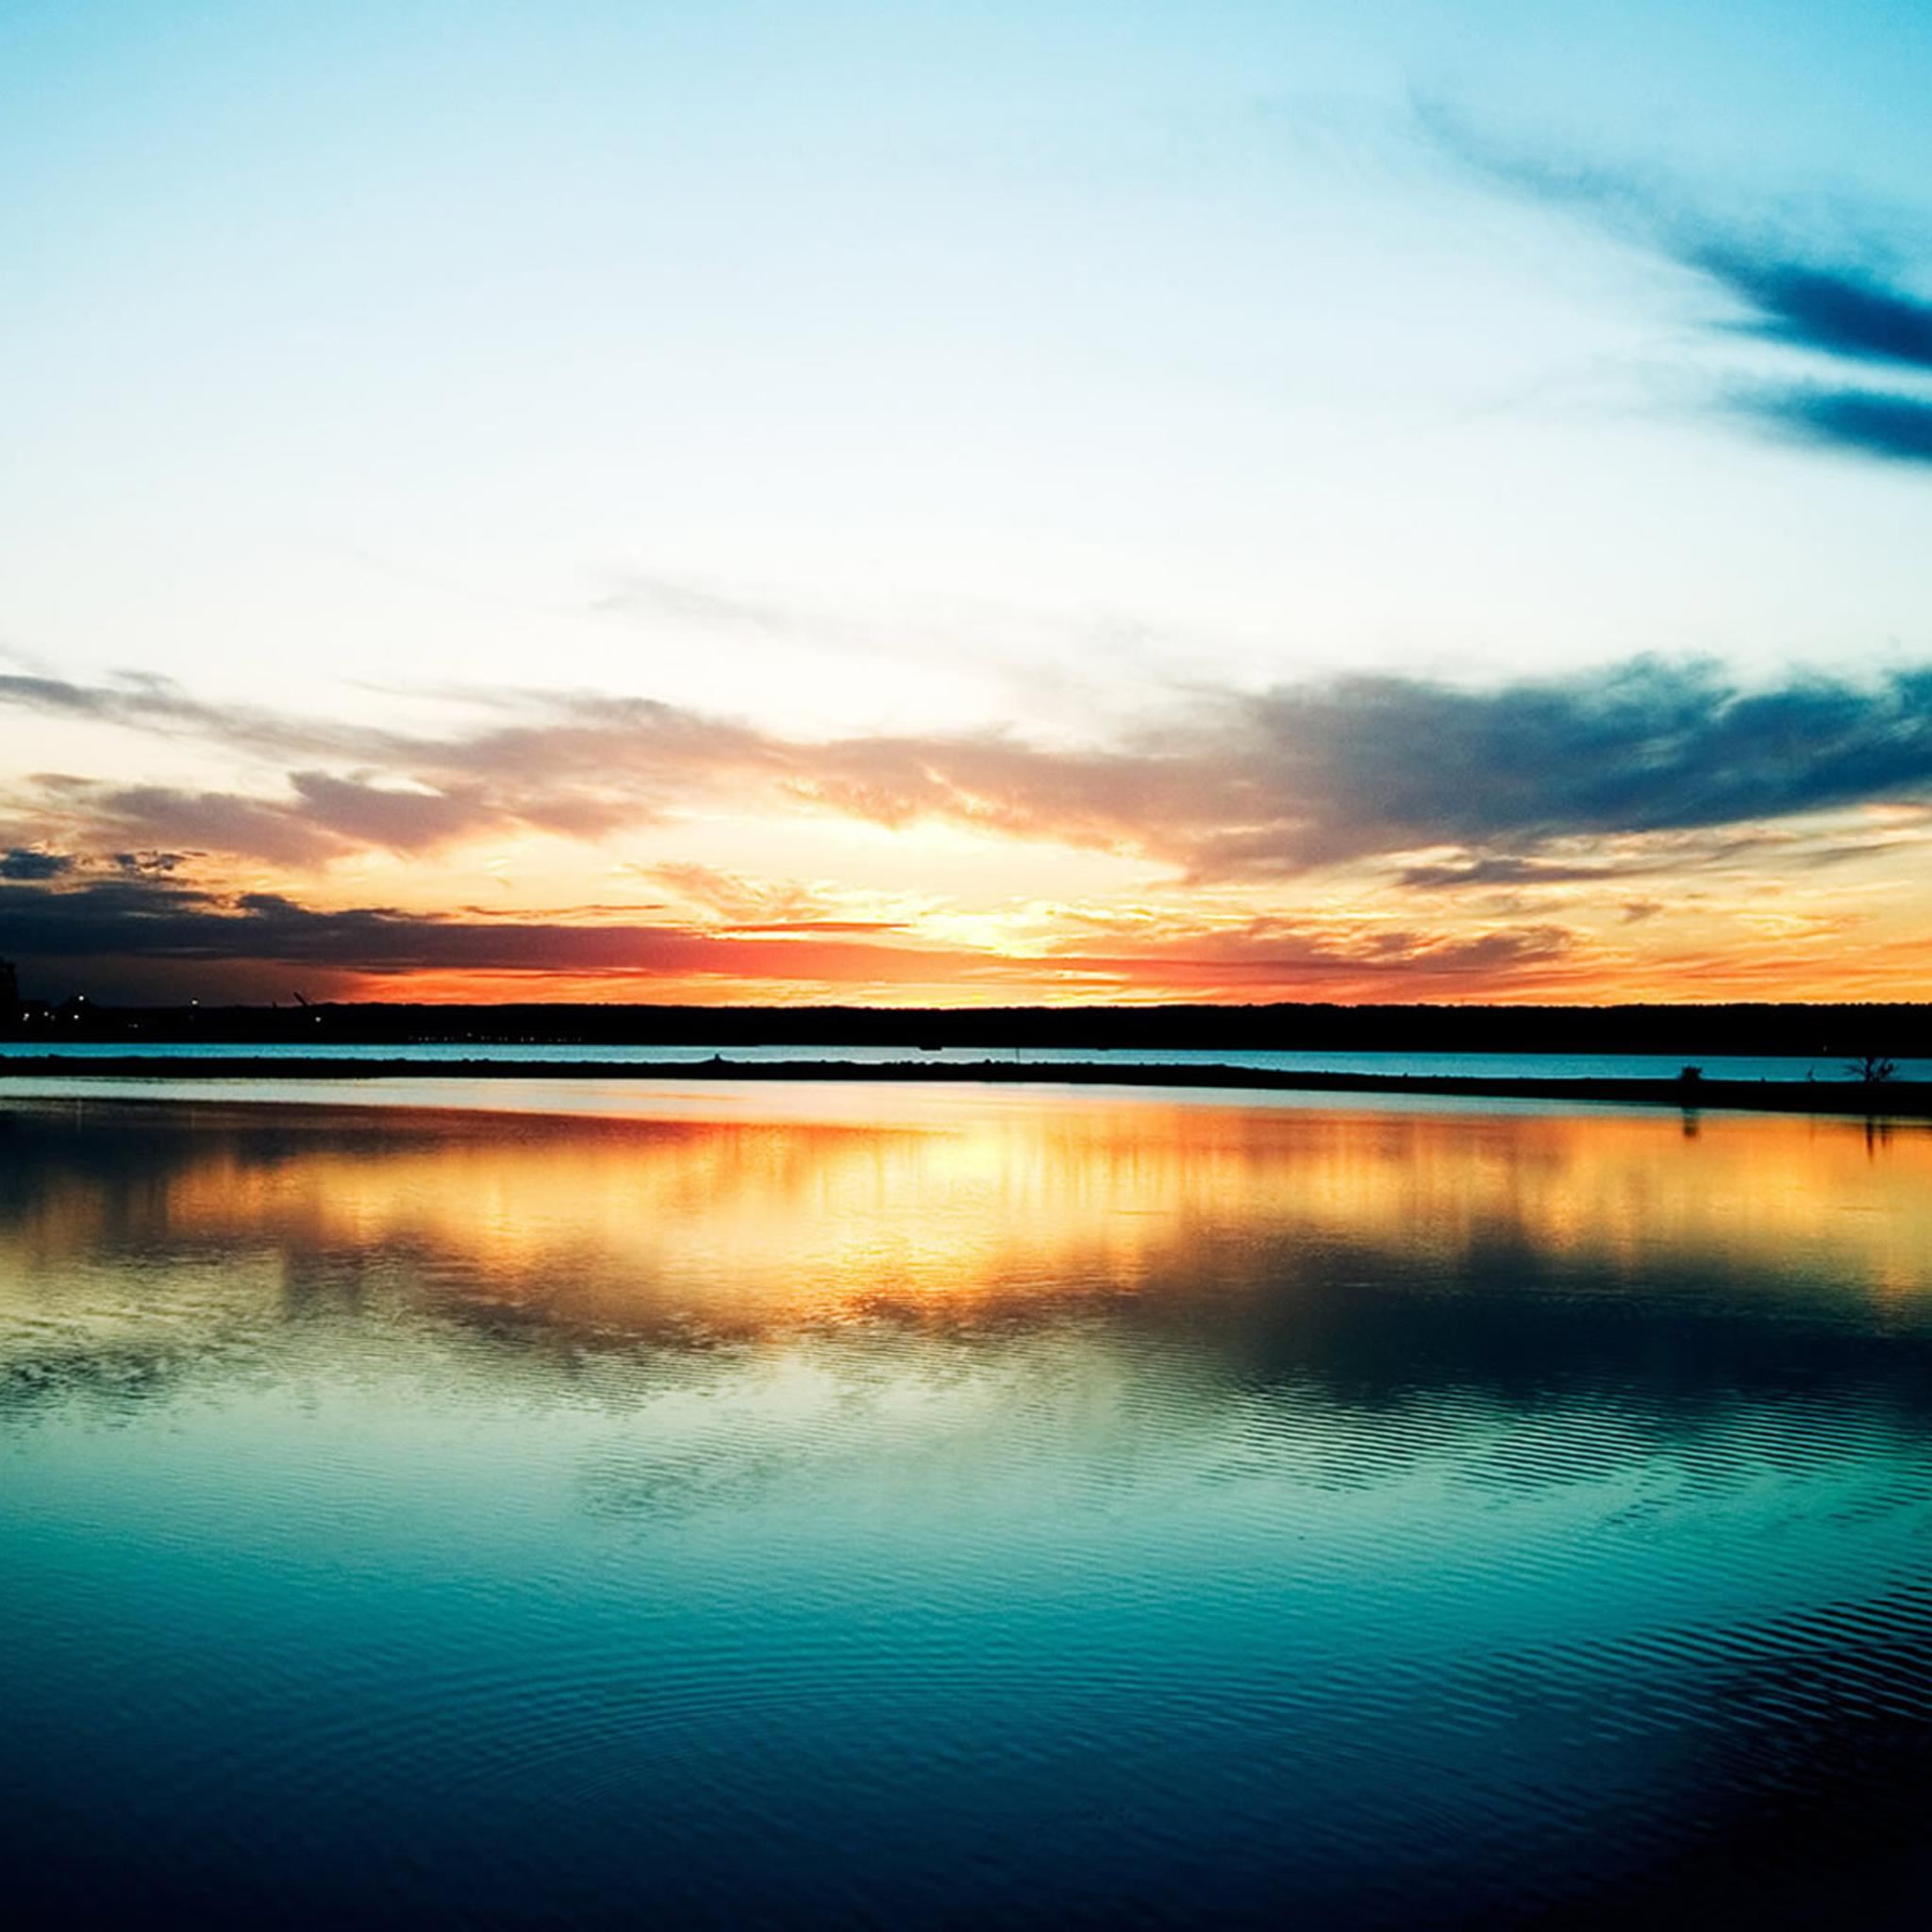 Sunset Lake Reflection iPad Air wallpaper 